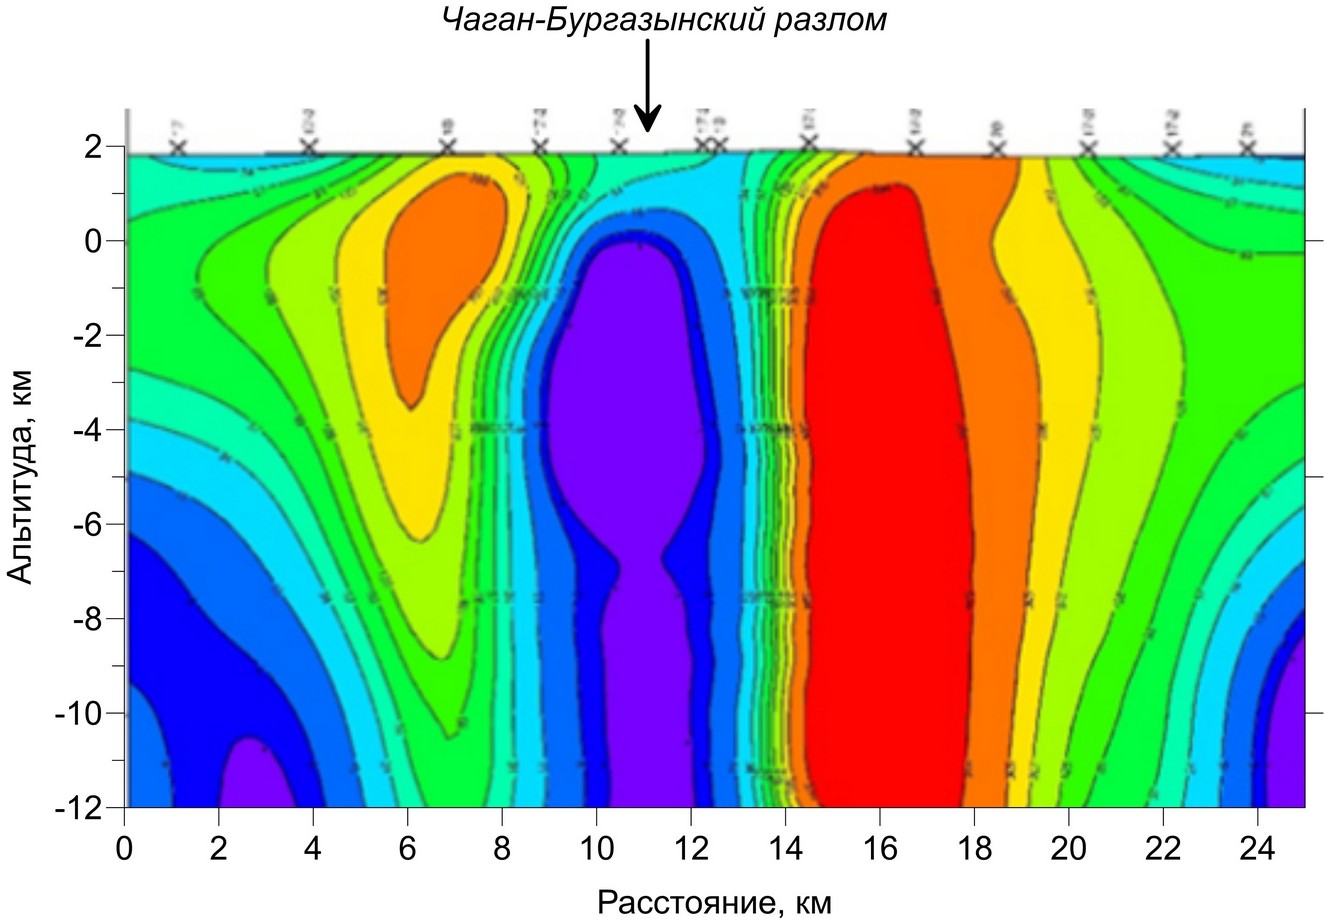 Геоэлектрический разрез по профилю через Чага-Бургазынский разлом по данным МТЗ